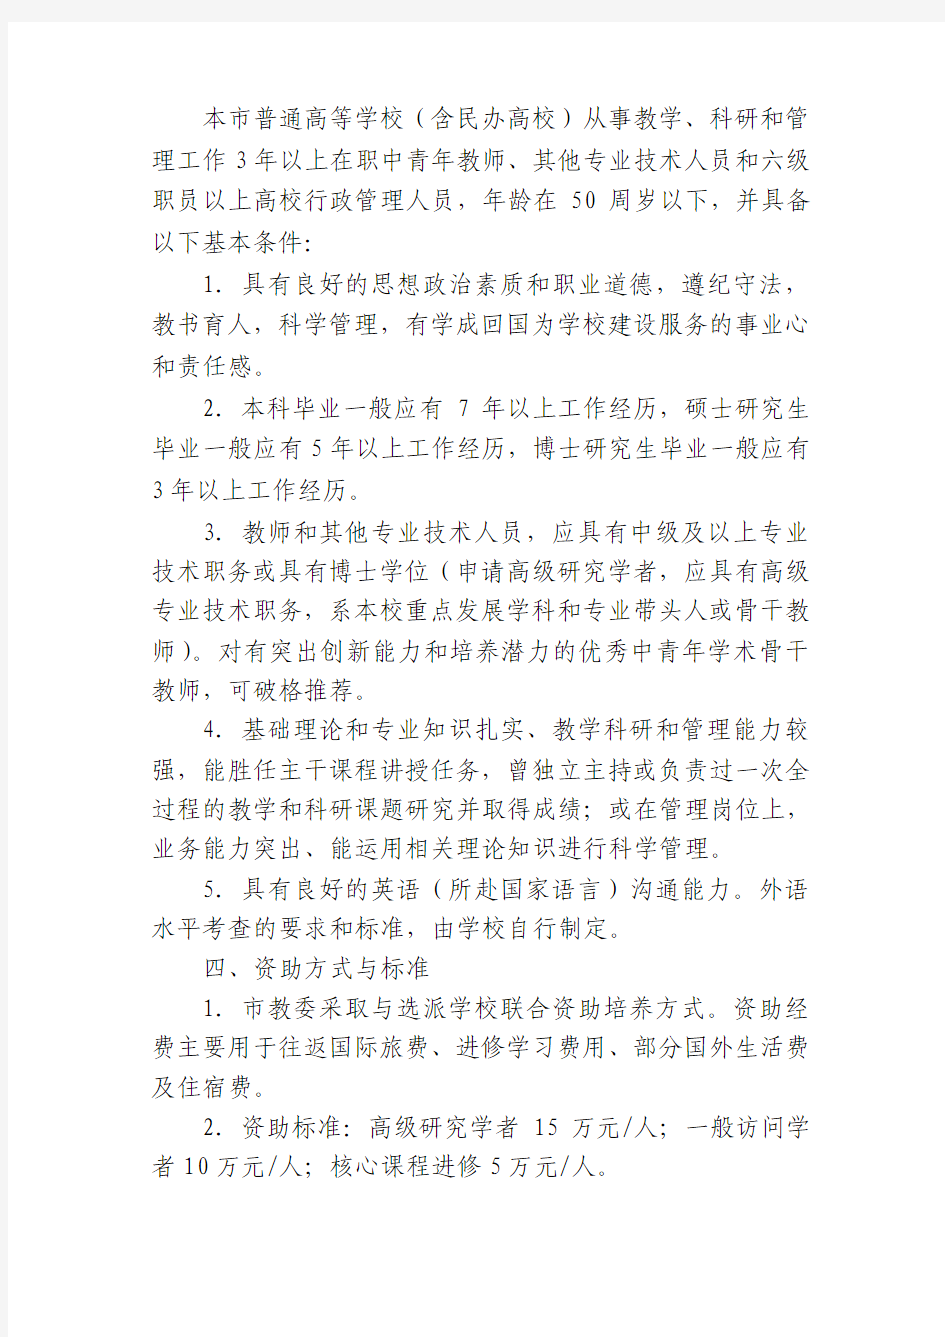 上海市教育委员会关于上海高校中青年教师国外访学进修计划的实施意见